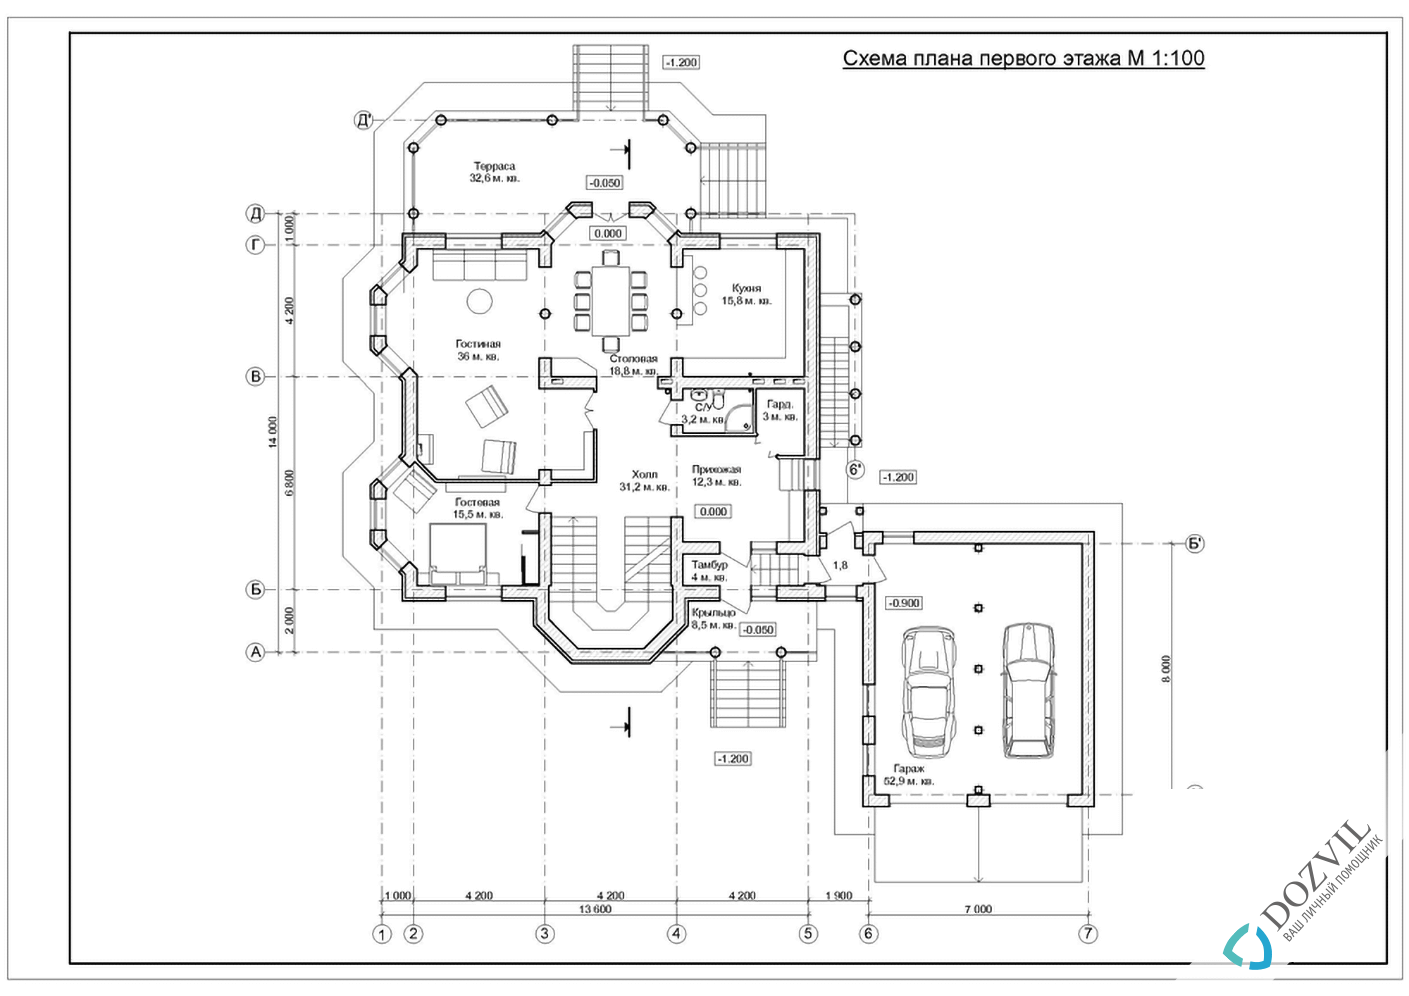 Узаконити реконструкцію > Реконструкція будинку з загальною площею до 500 квадратних метрів > 2 етап - Розробка ескізу намірів будівництва